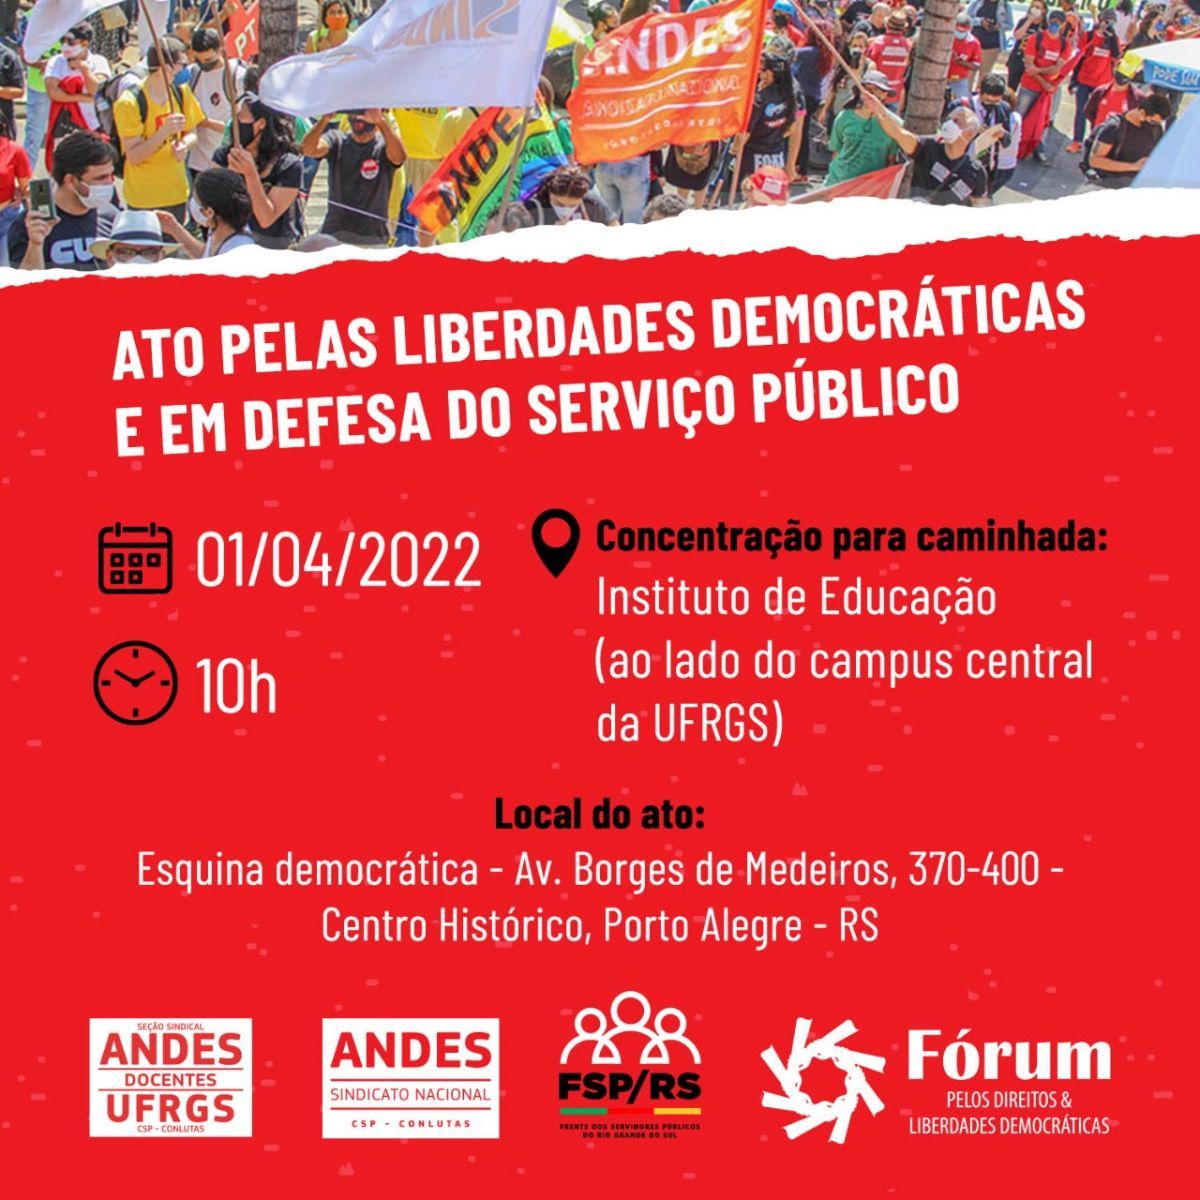 Ato "Pelas Liberdades Democráticas e em Defesa do Serviço Público" em 1 de abril encerrará as atividades do 40º Congresso do ANDES-SN